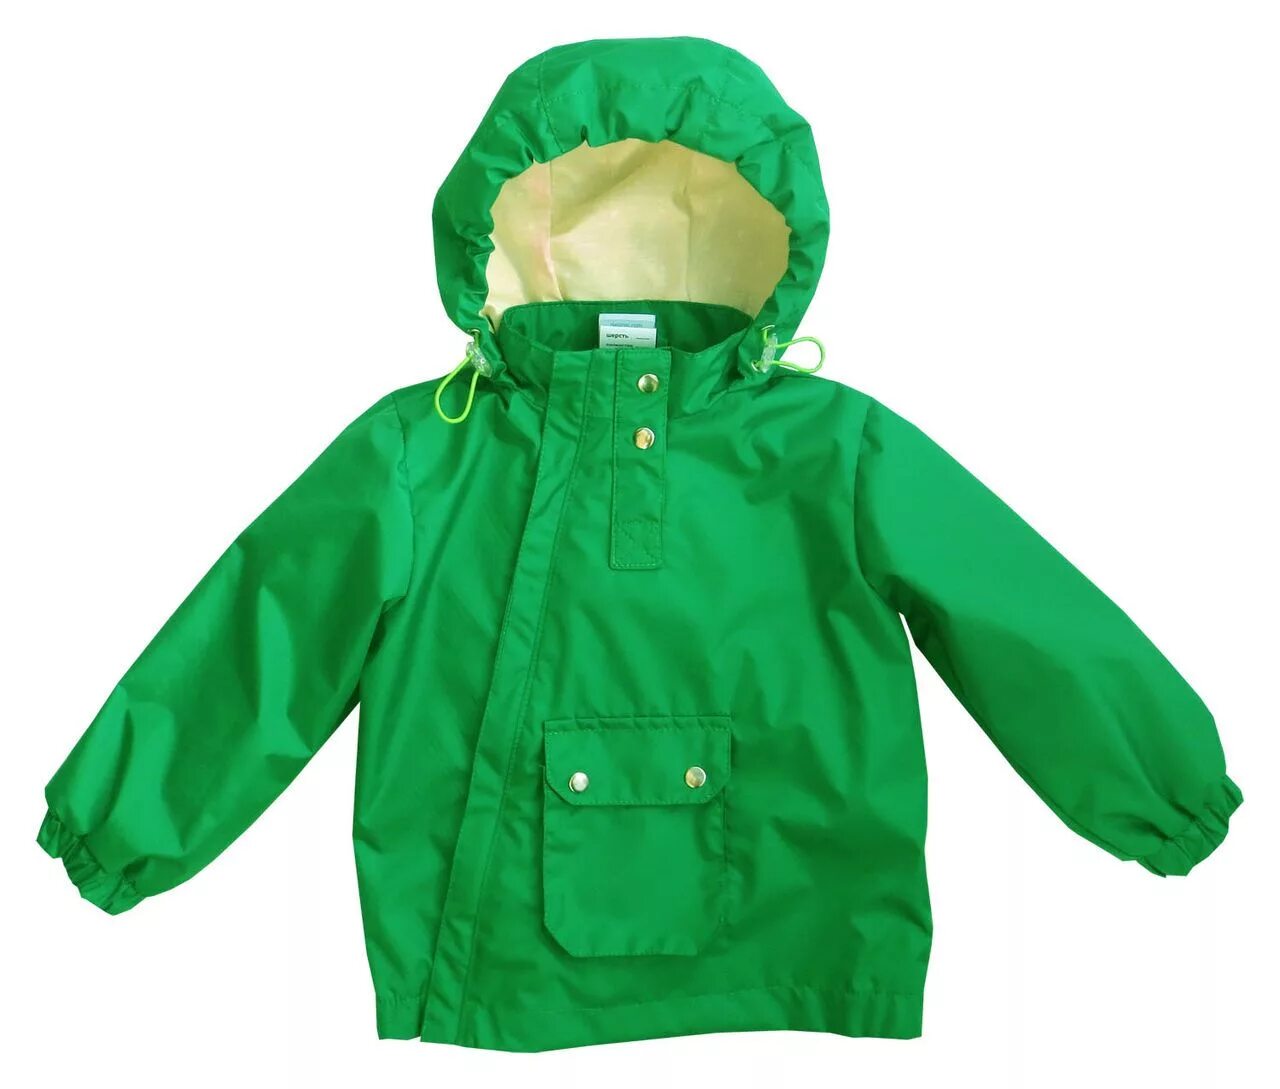 Ветровка Вайкики для мальчика зеленая. Курточки для малышей. Ребенок в куртке. Салатовая ветровка для мальчика. Зеленые куртки для мальчика